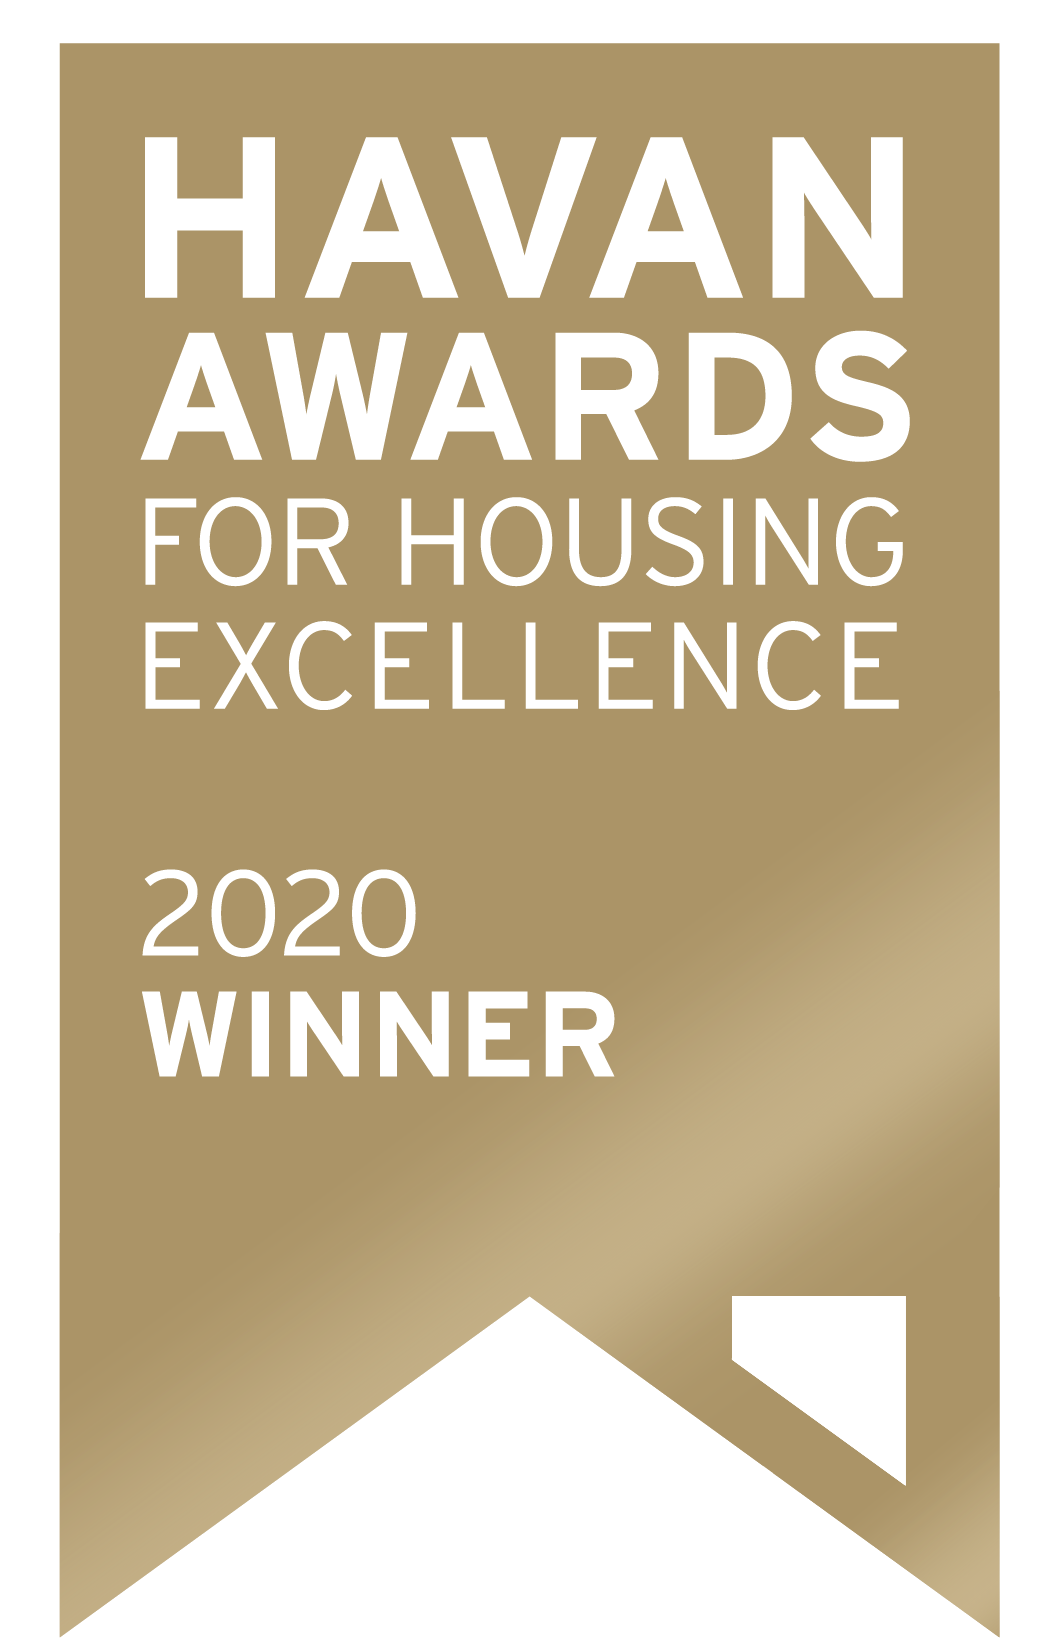 HAVAN Awards For Housing Excellence 2020 Winner